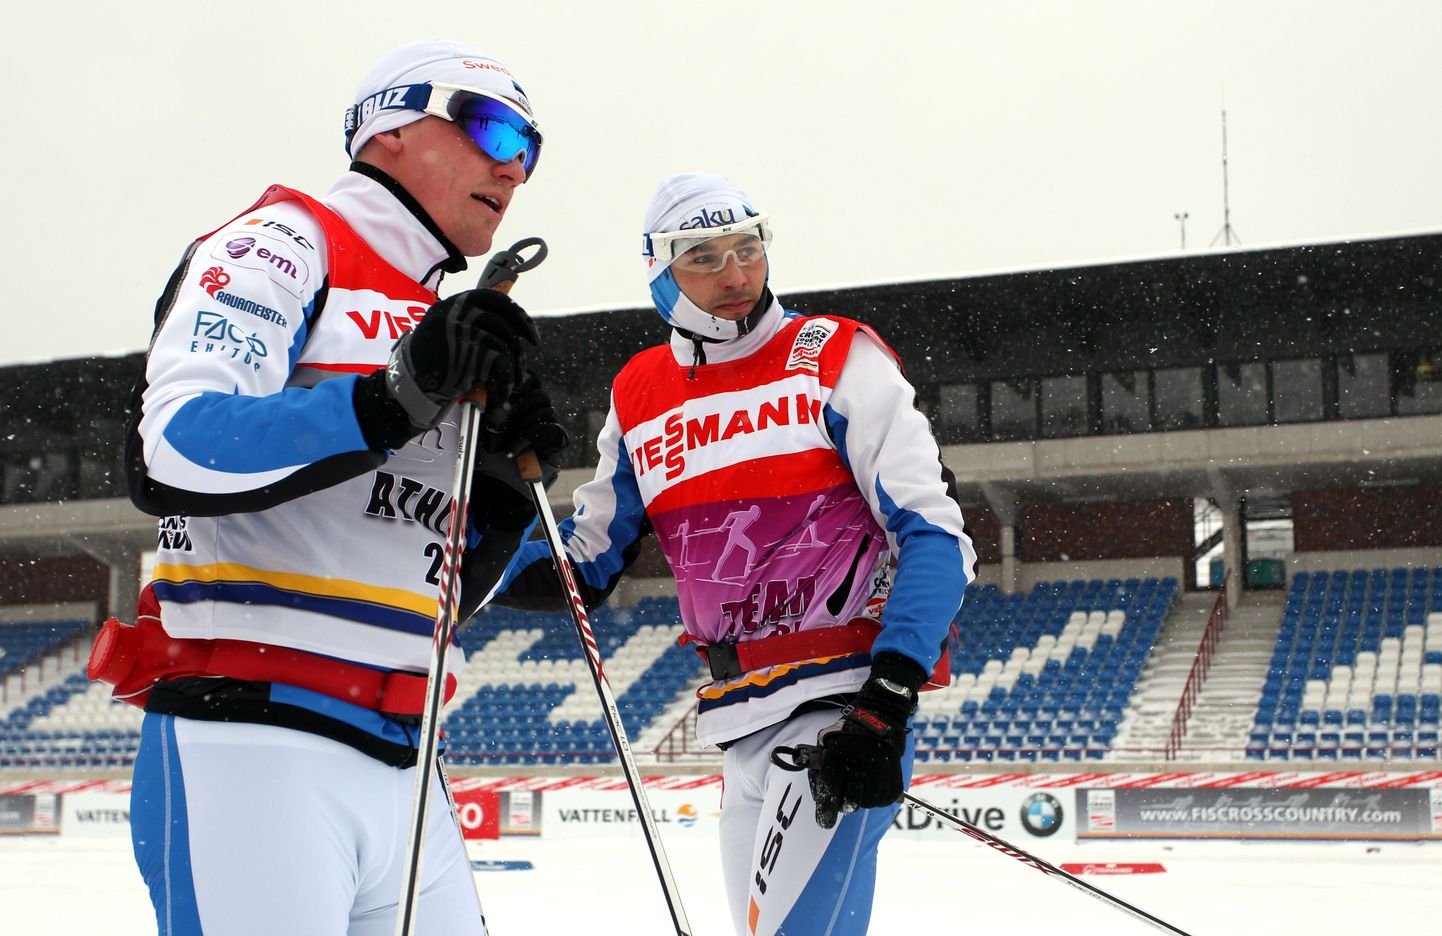 Tippspordiga lõpparve teinud Andrus Veerpalu testis Otepää MK-etapi eel Eesti suusakoondislaste suuski. Pildil koos Anti Saarepuuga.